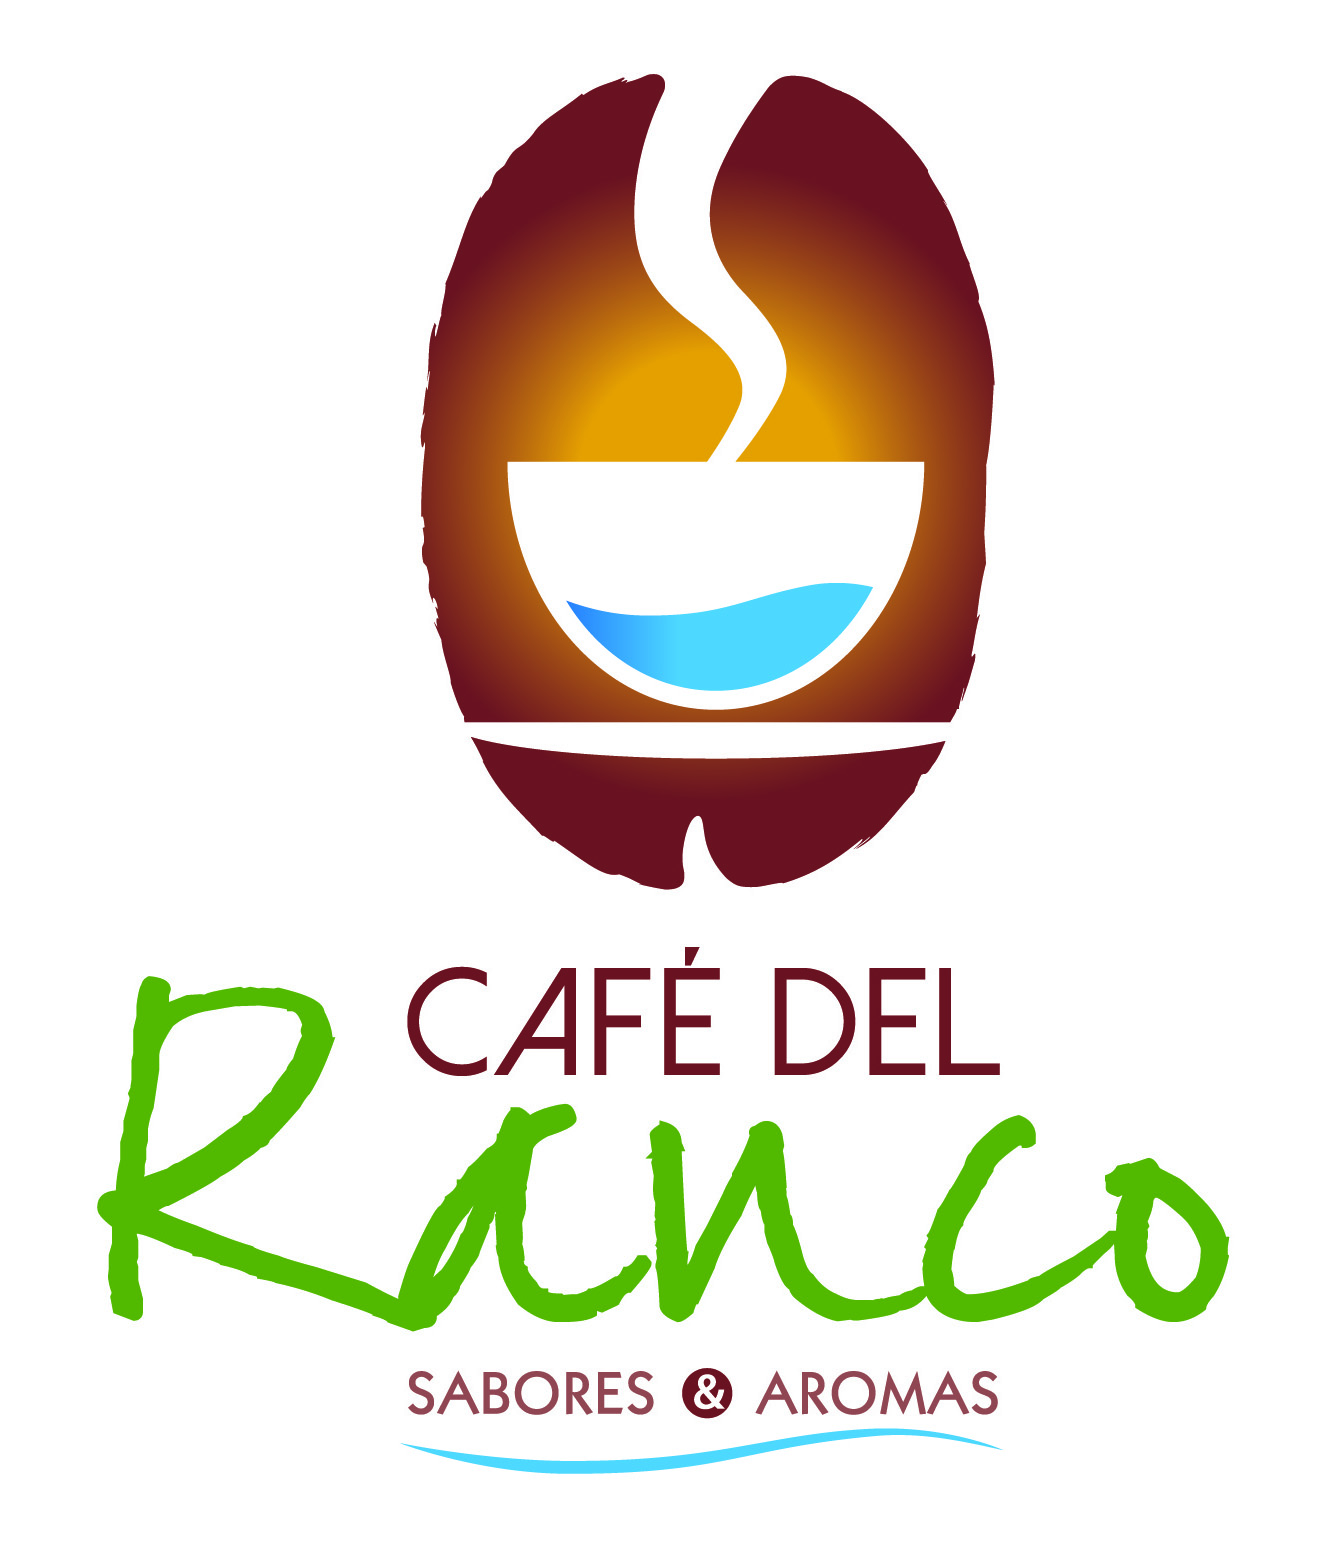 Café del Ranco